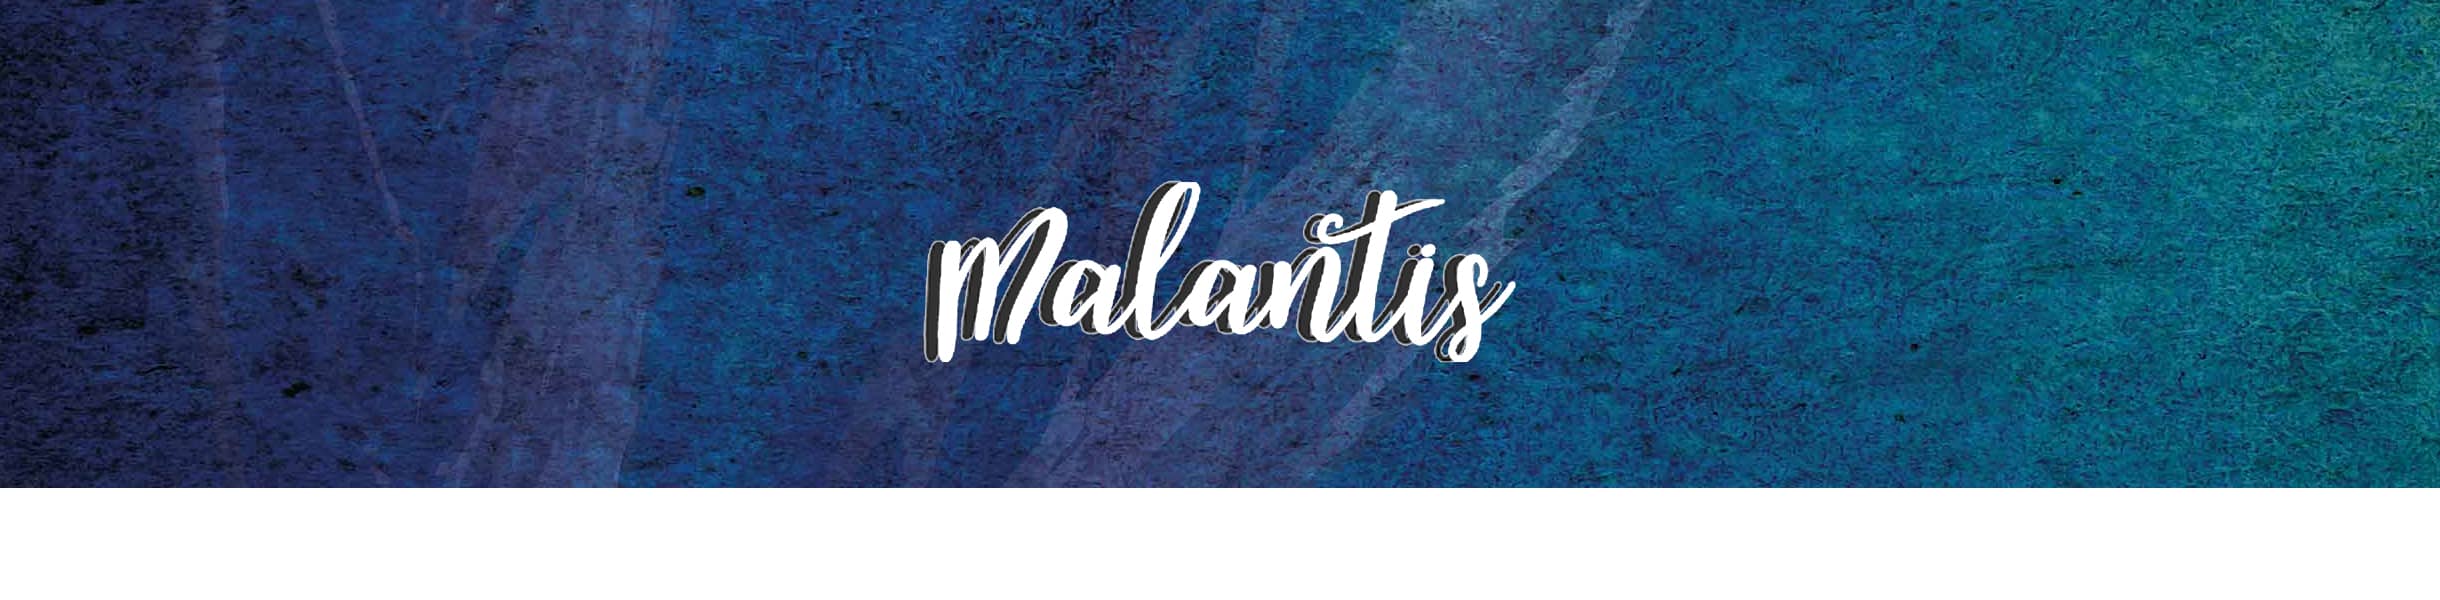 Malantis Online Shop